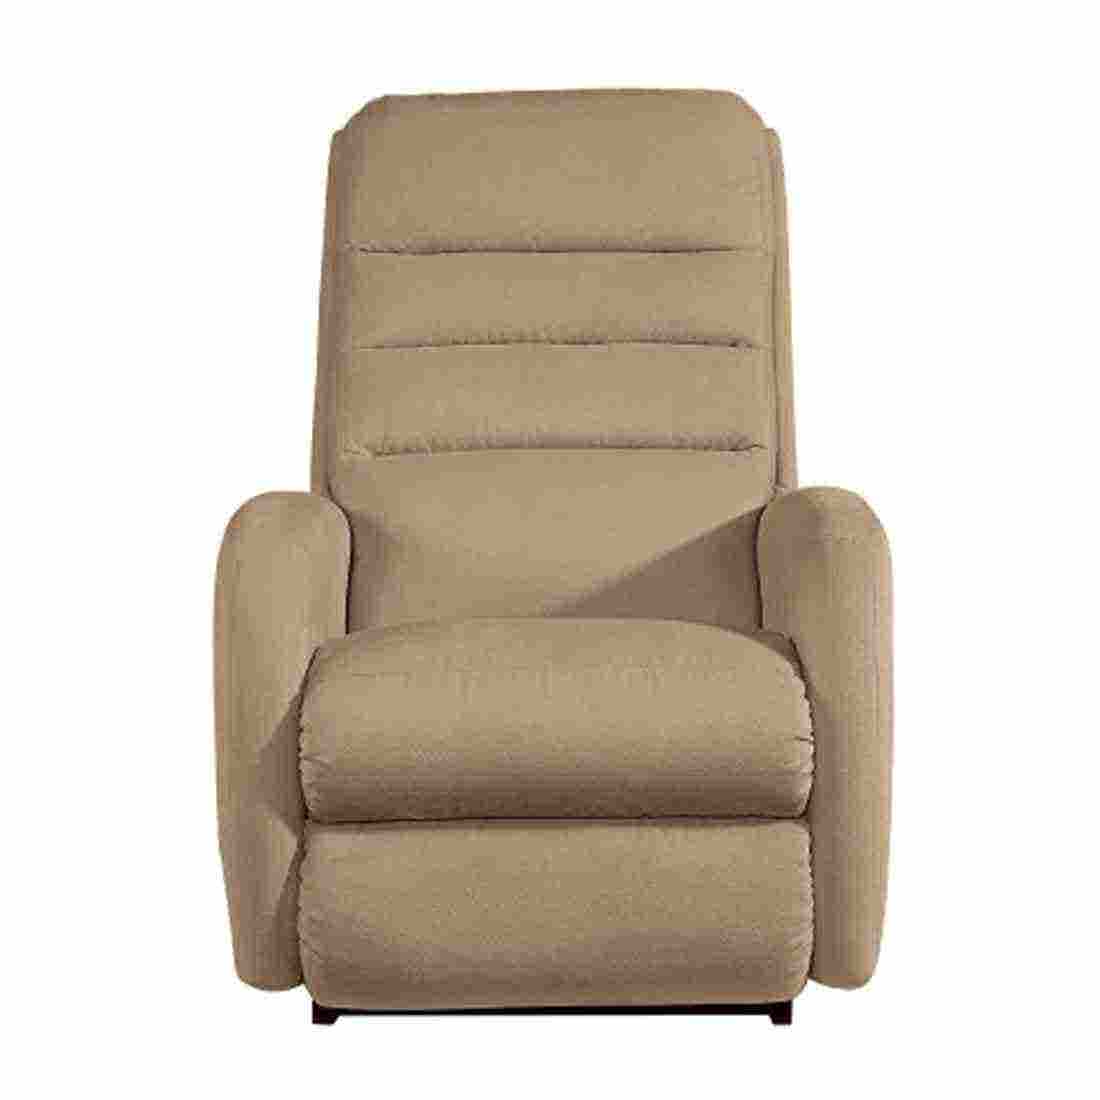 เก้าอี้ปรับเอนนอนไฟฟ้า La-Z-Boy 1PT-744-D-144073 Forum ผ้า i-Clean สี Twilight-01